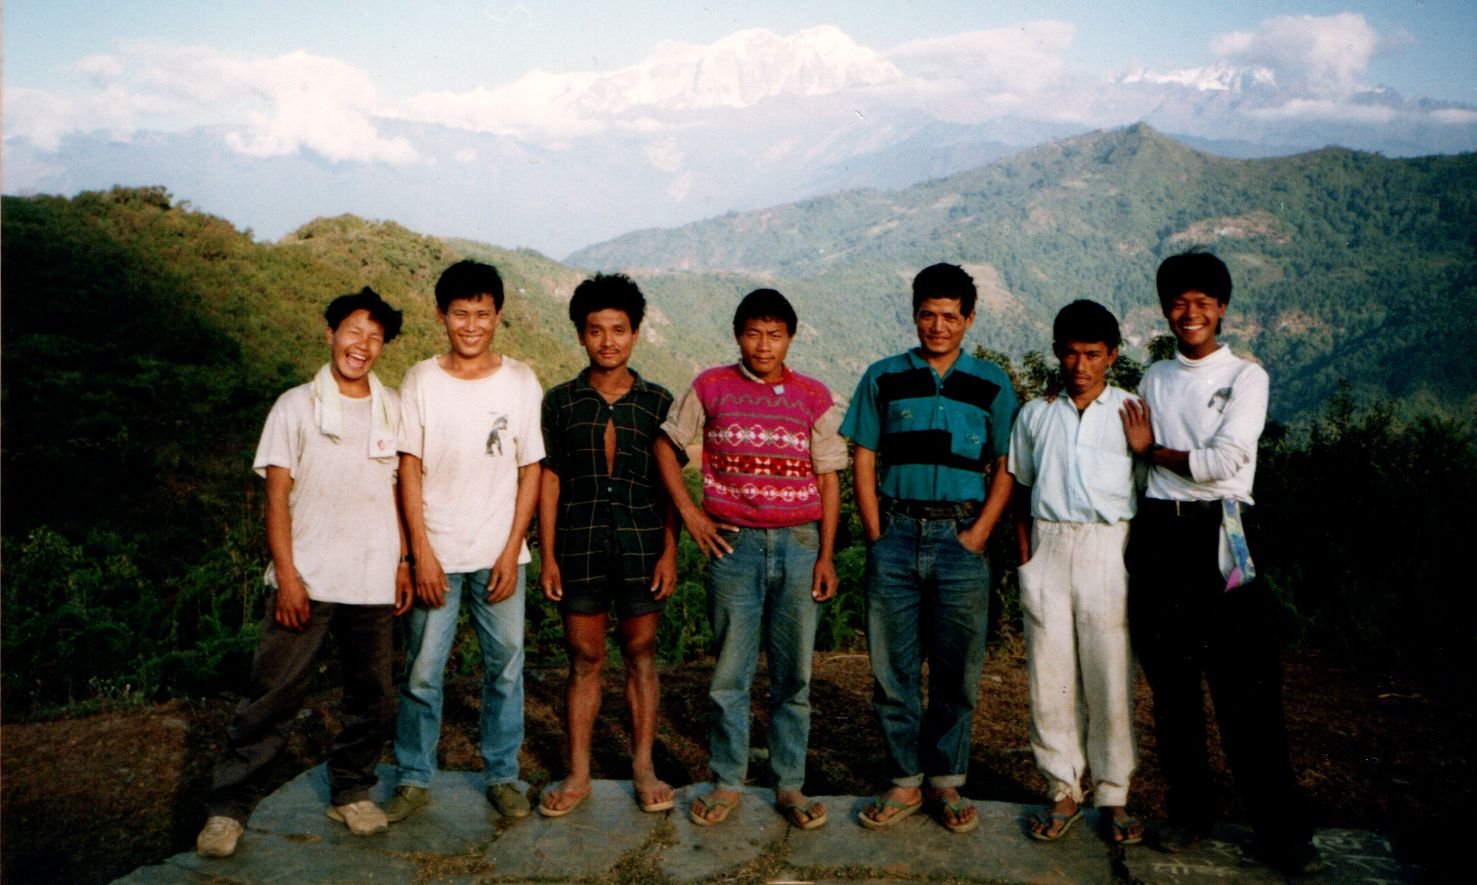 Trekking crew and the Lamjung Himal